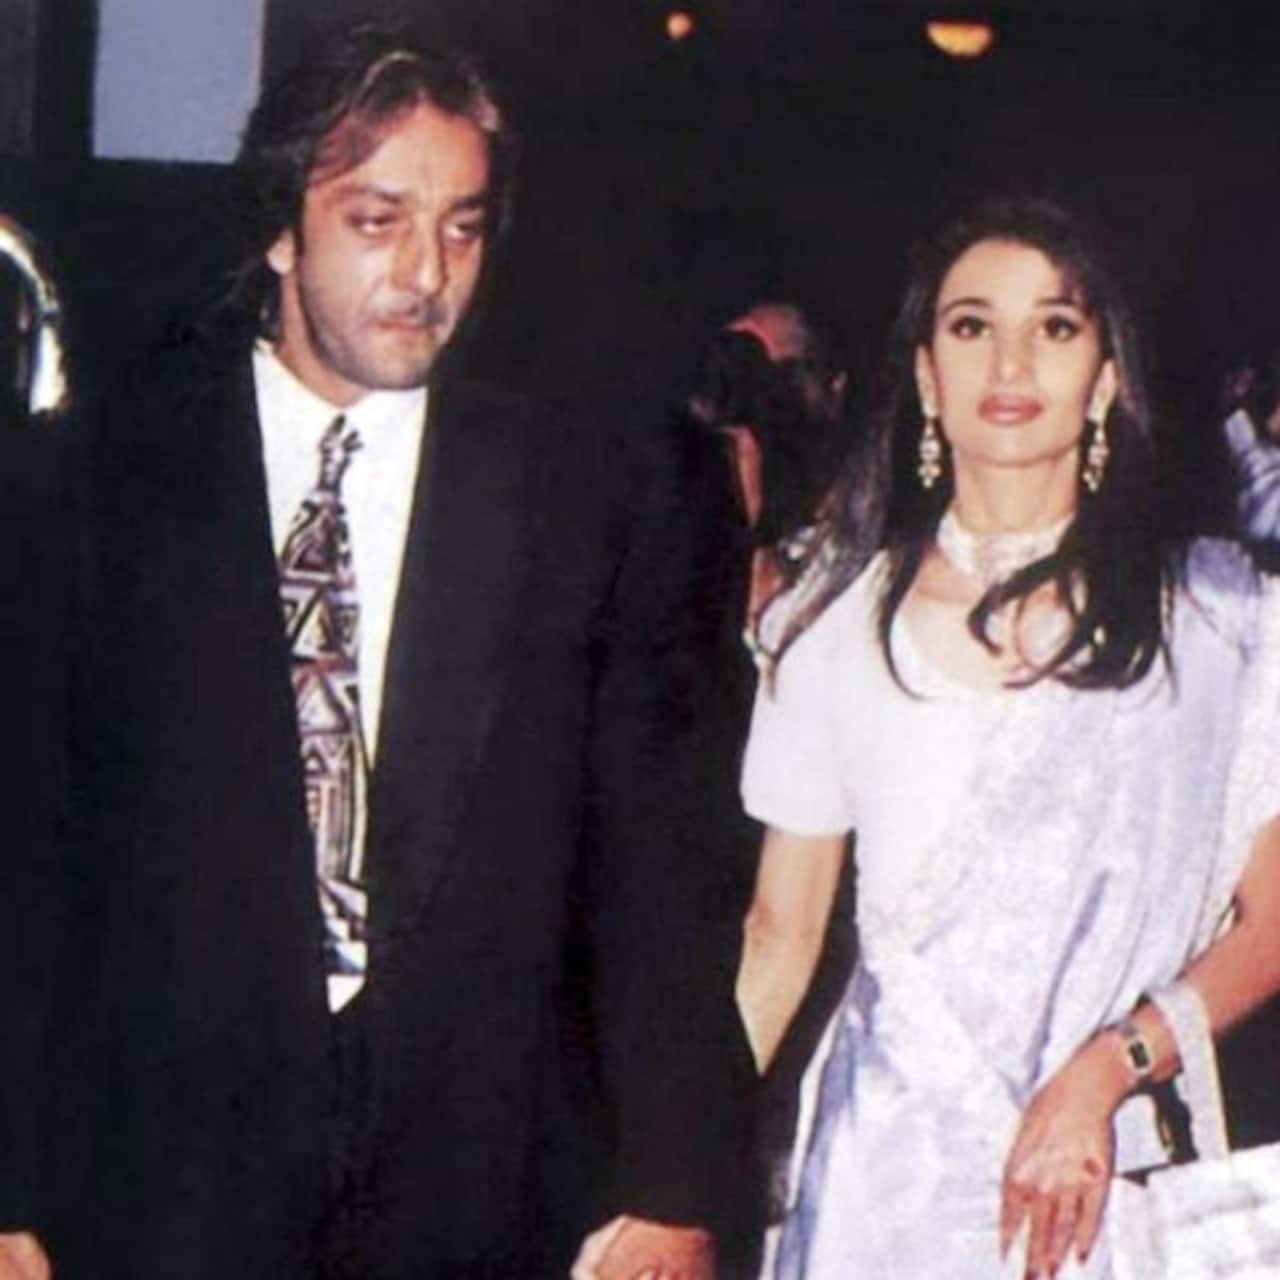 संजय दत्त और रिया पिल्लई (Sanjay Dutt and Rhea Pillai)